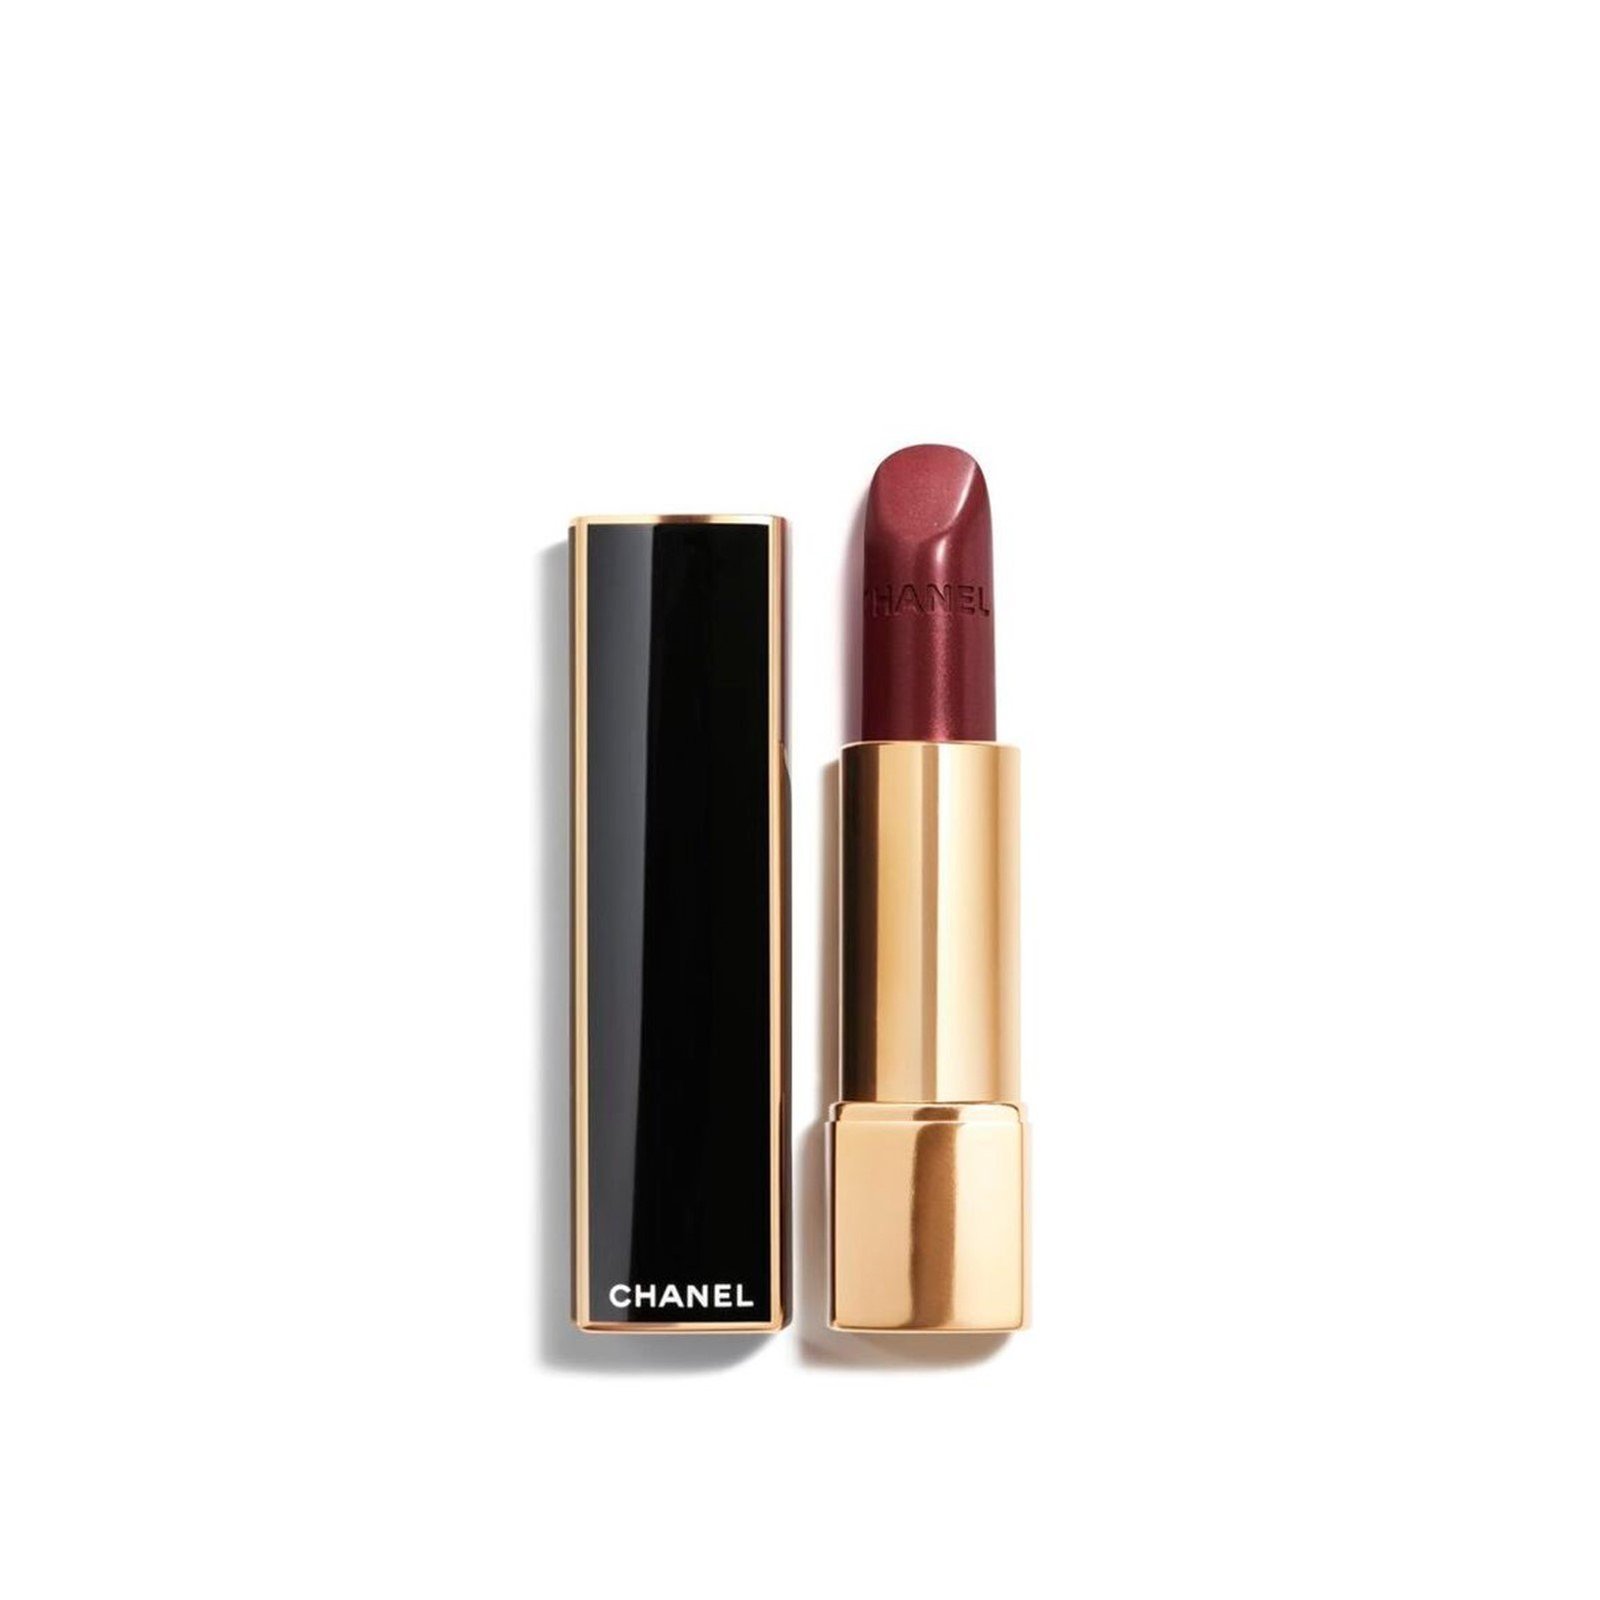 CHANEL Rouge Allure Luminous Intense Lip Colour 137 Pourpre D'Or 3.5g (0.12 oz)